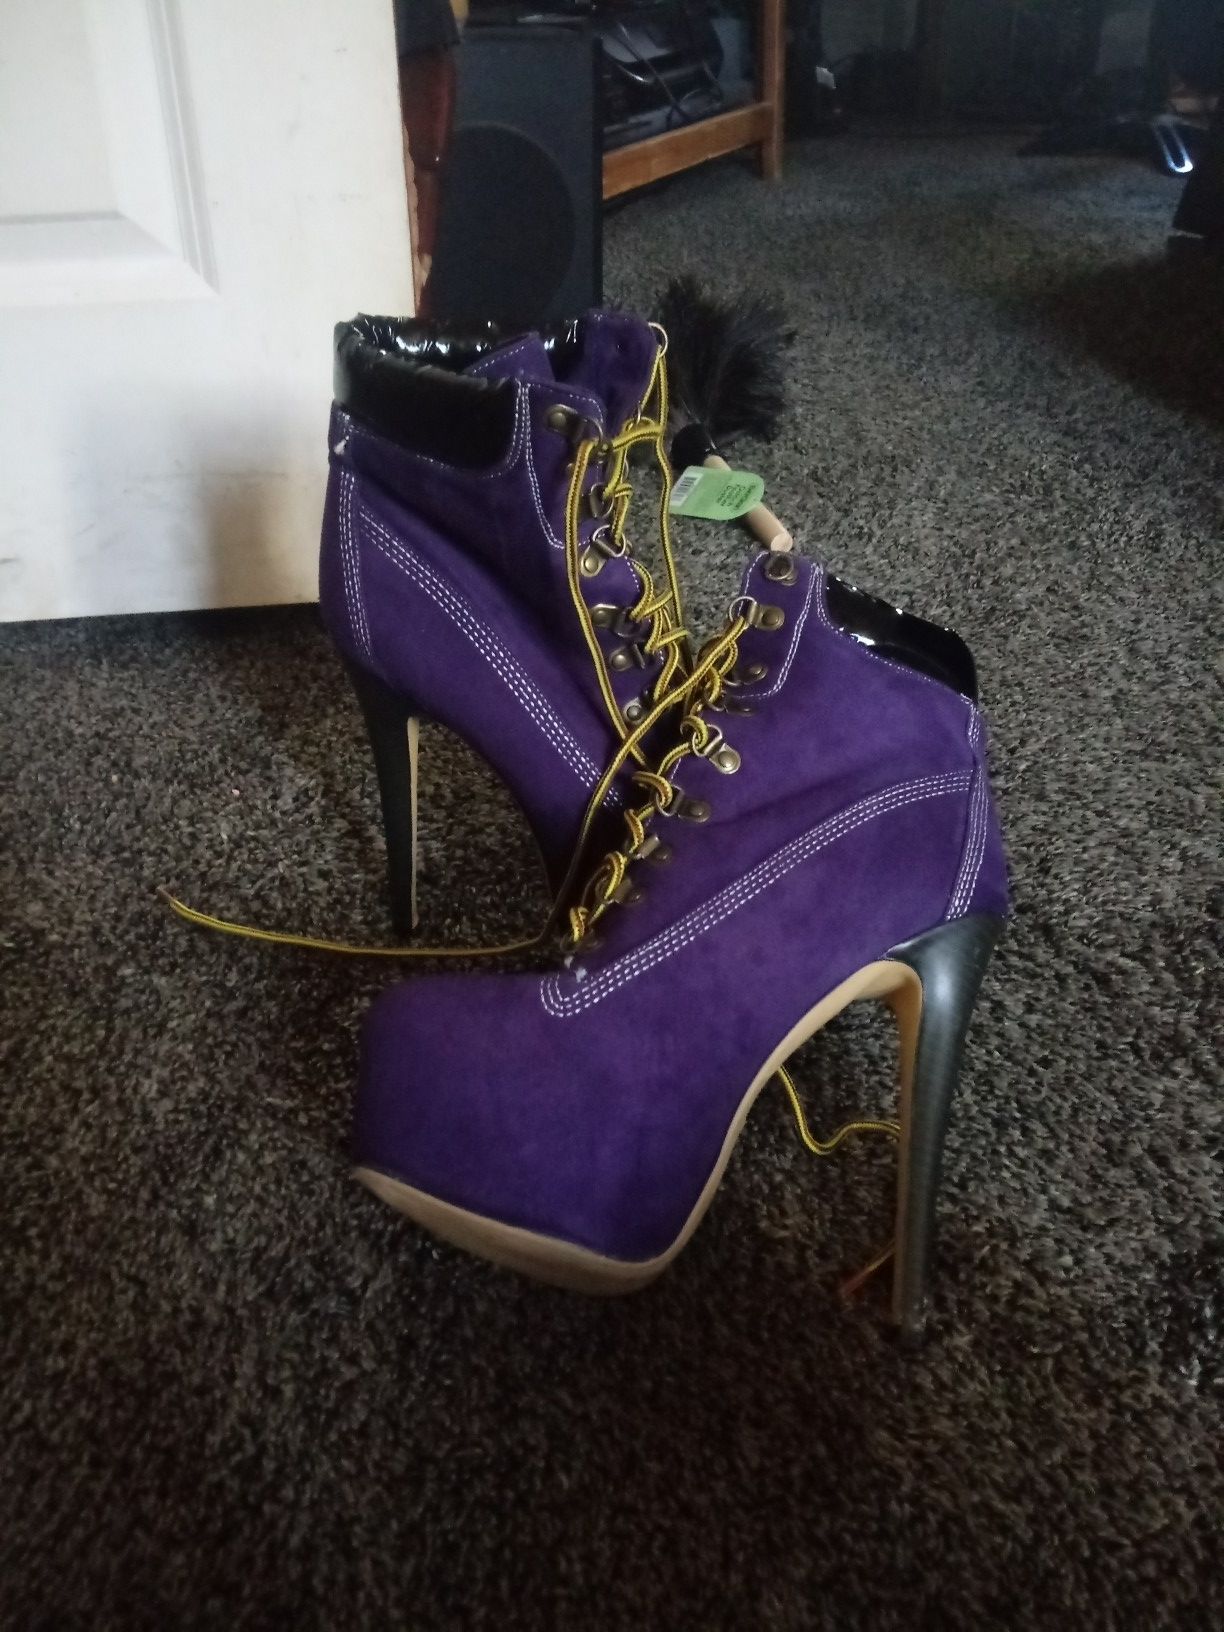 High heels purple combat boots